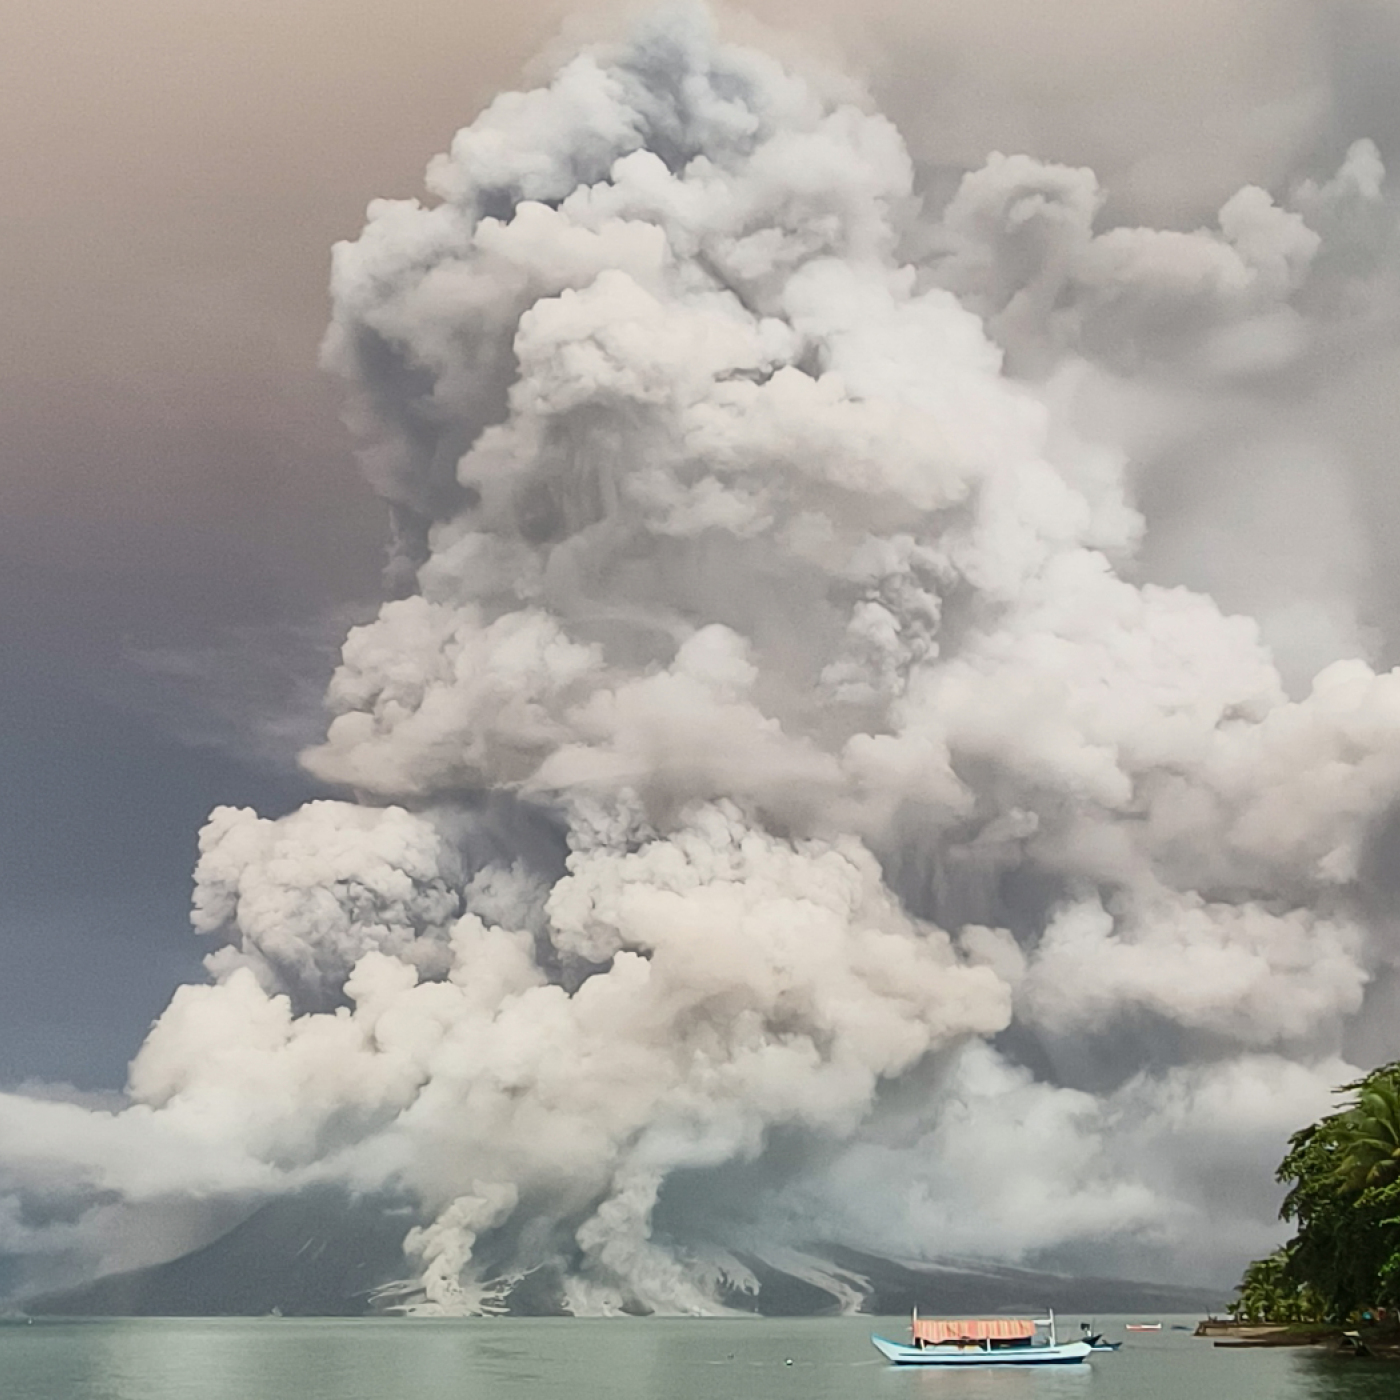 vulkan ruang in indonesien kommt nicht zur ruhe